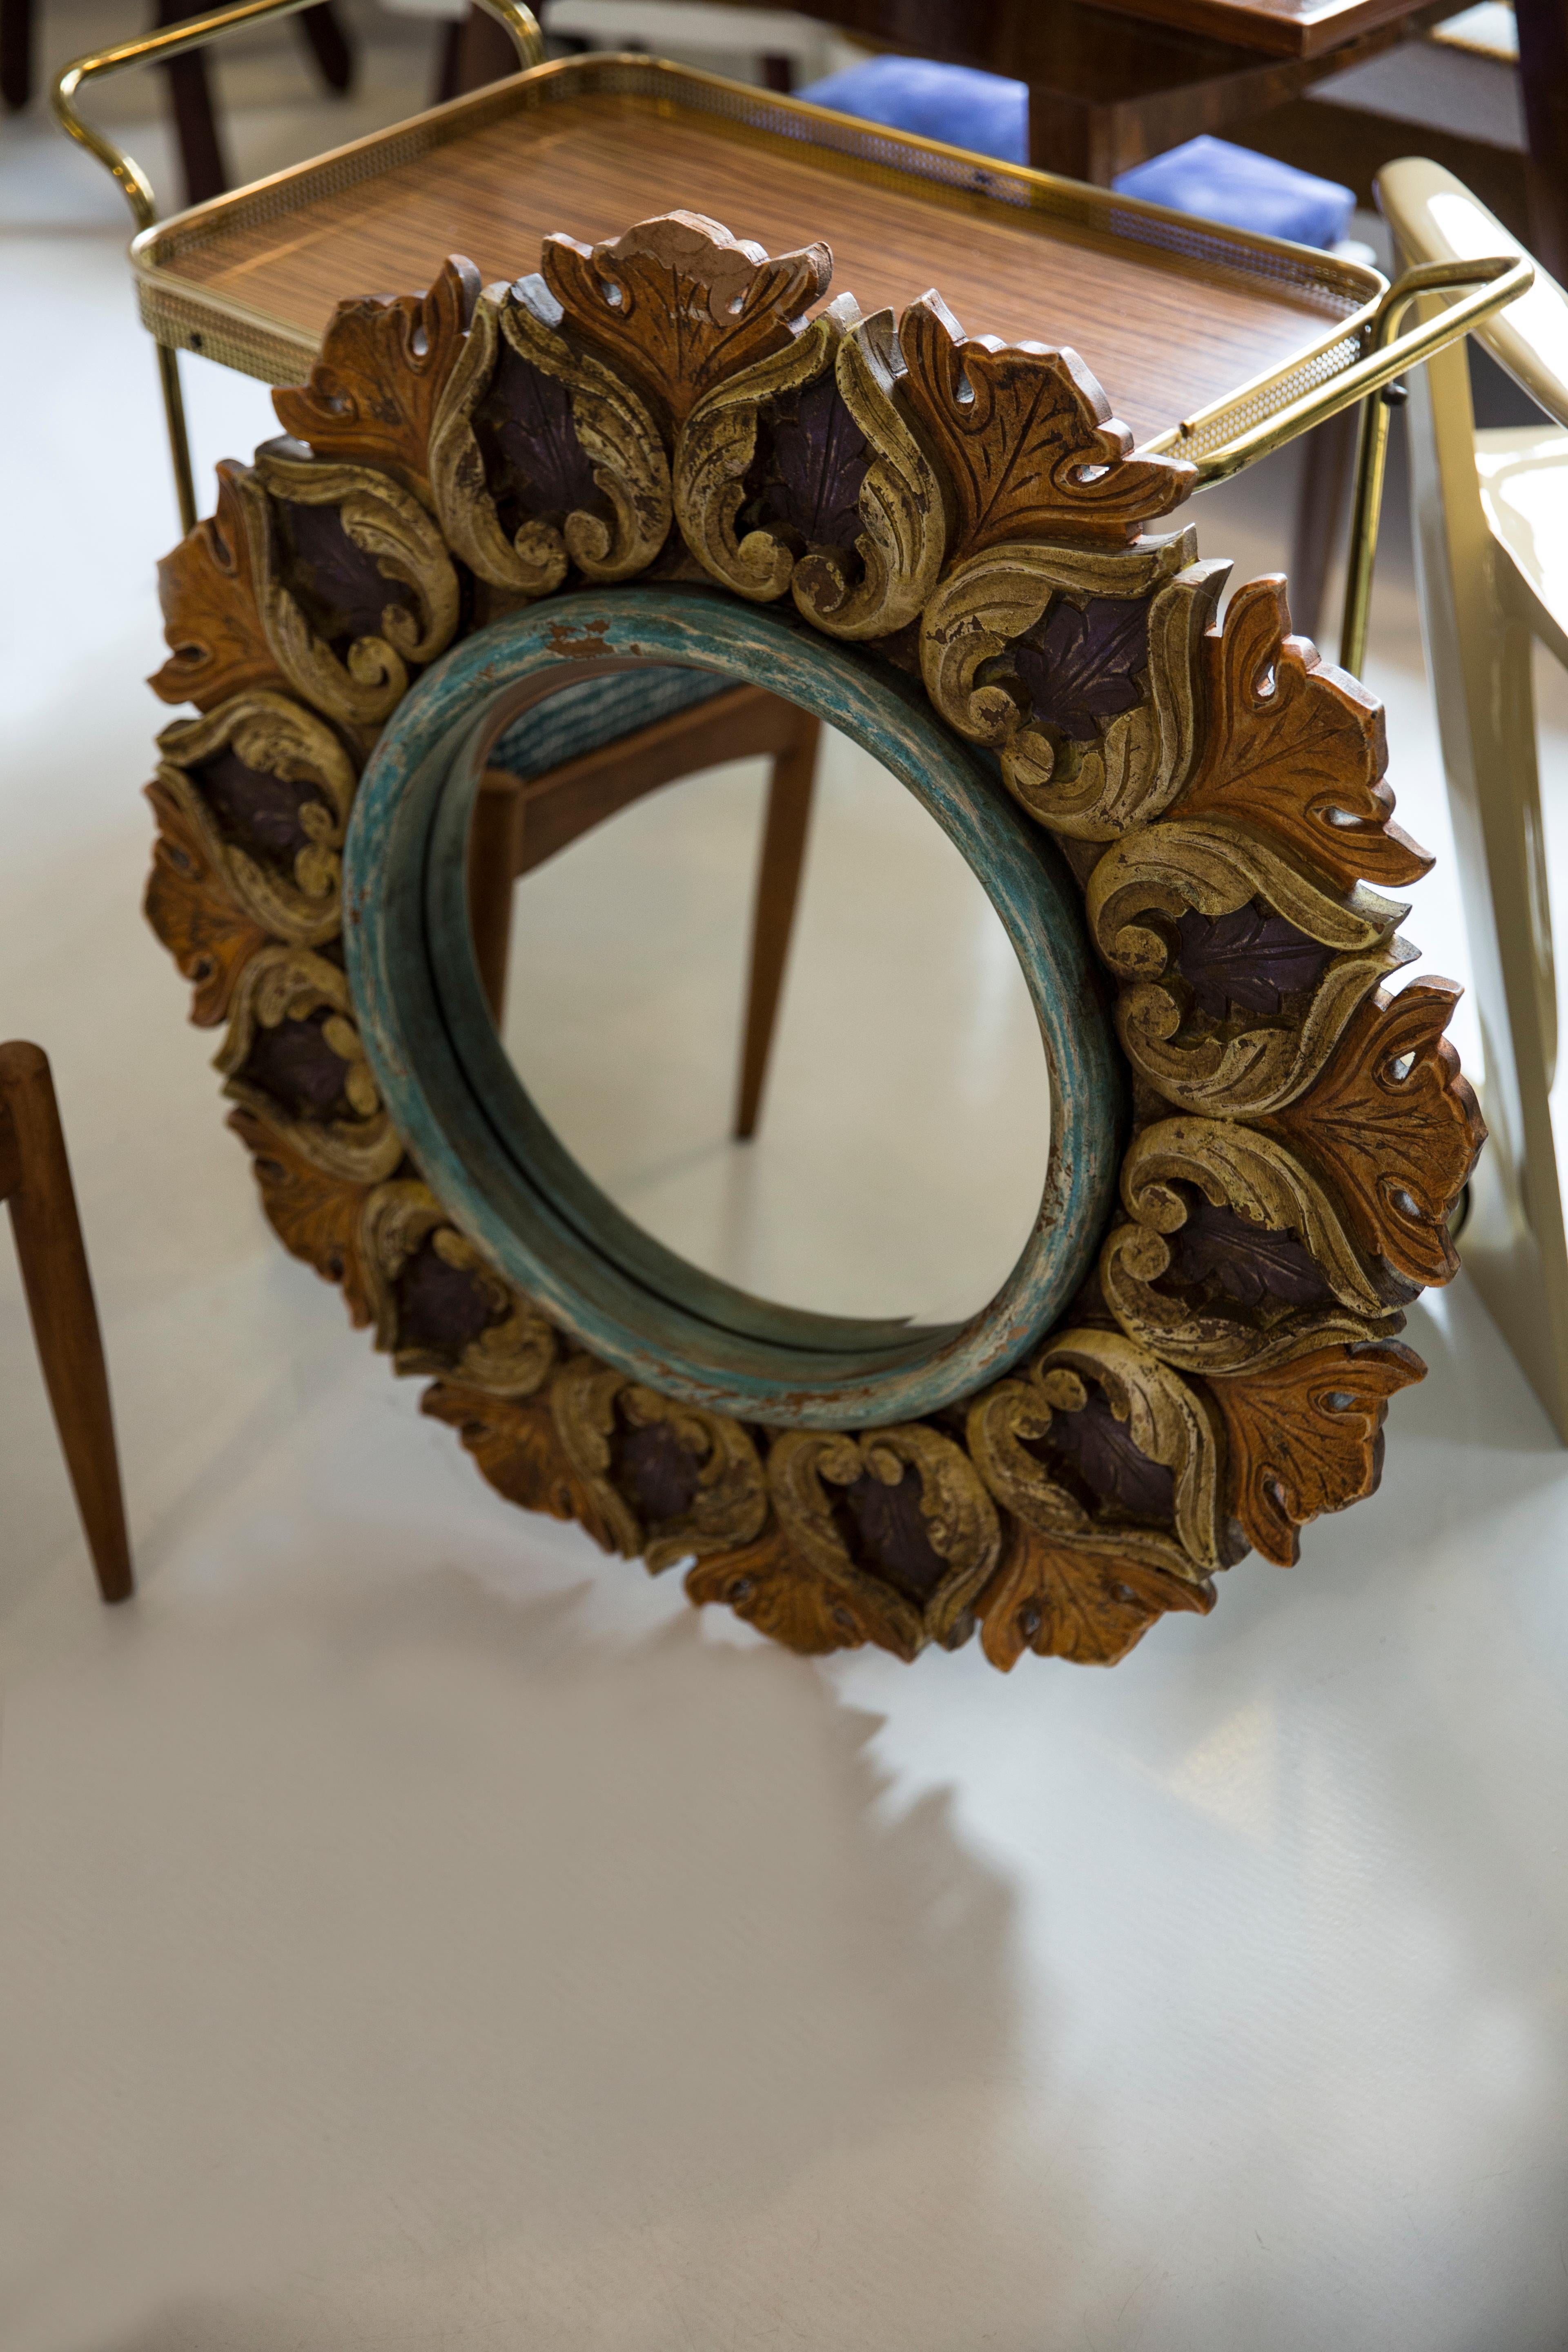 Schöner Spiegel in einem dekorativen Rahmen aus Italien. Der Rahmen ist aus Holz gefertigt. Der Spiegel ist in sehr gutem Vintage-Zustand. Original Glas. Ein schönes Stück für jedes Interieur! Nur ein einziges Stück.

Rahmen: 80 cm
Spiegel: 40 cm.